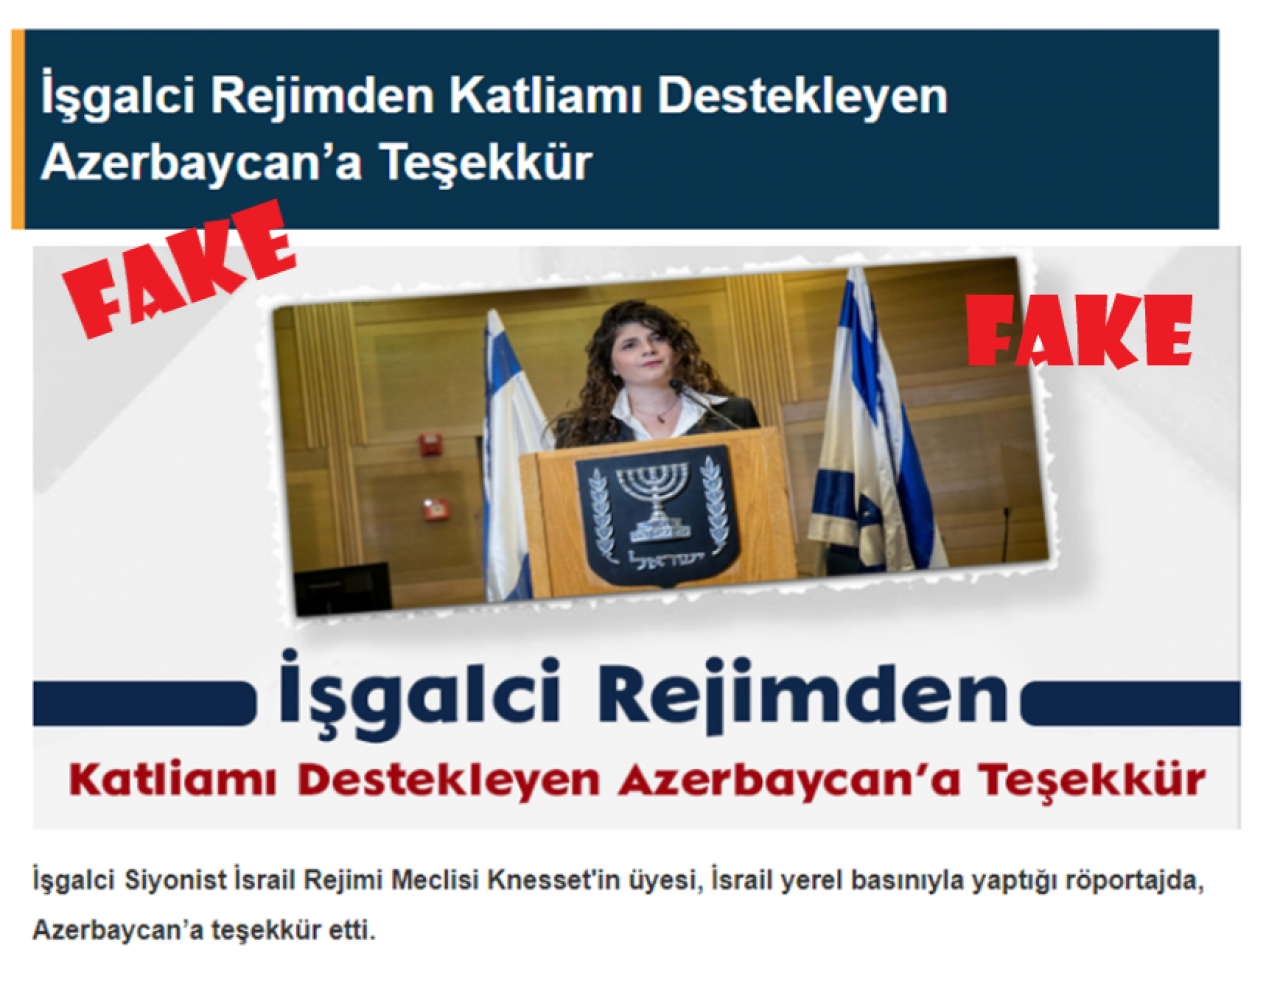 Did Knesset Likud member Sharren Haskel thank Azerbaijan?